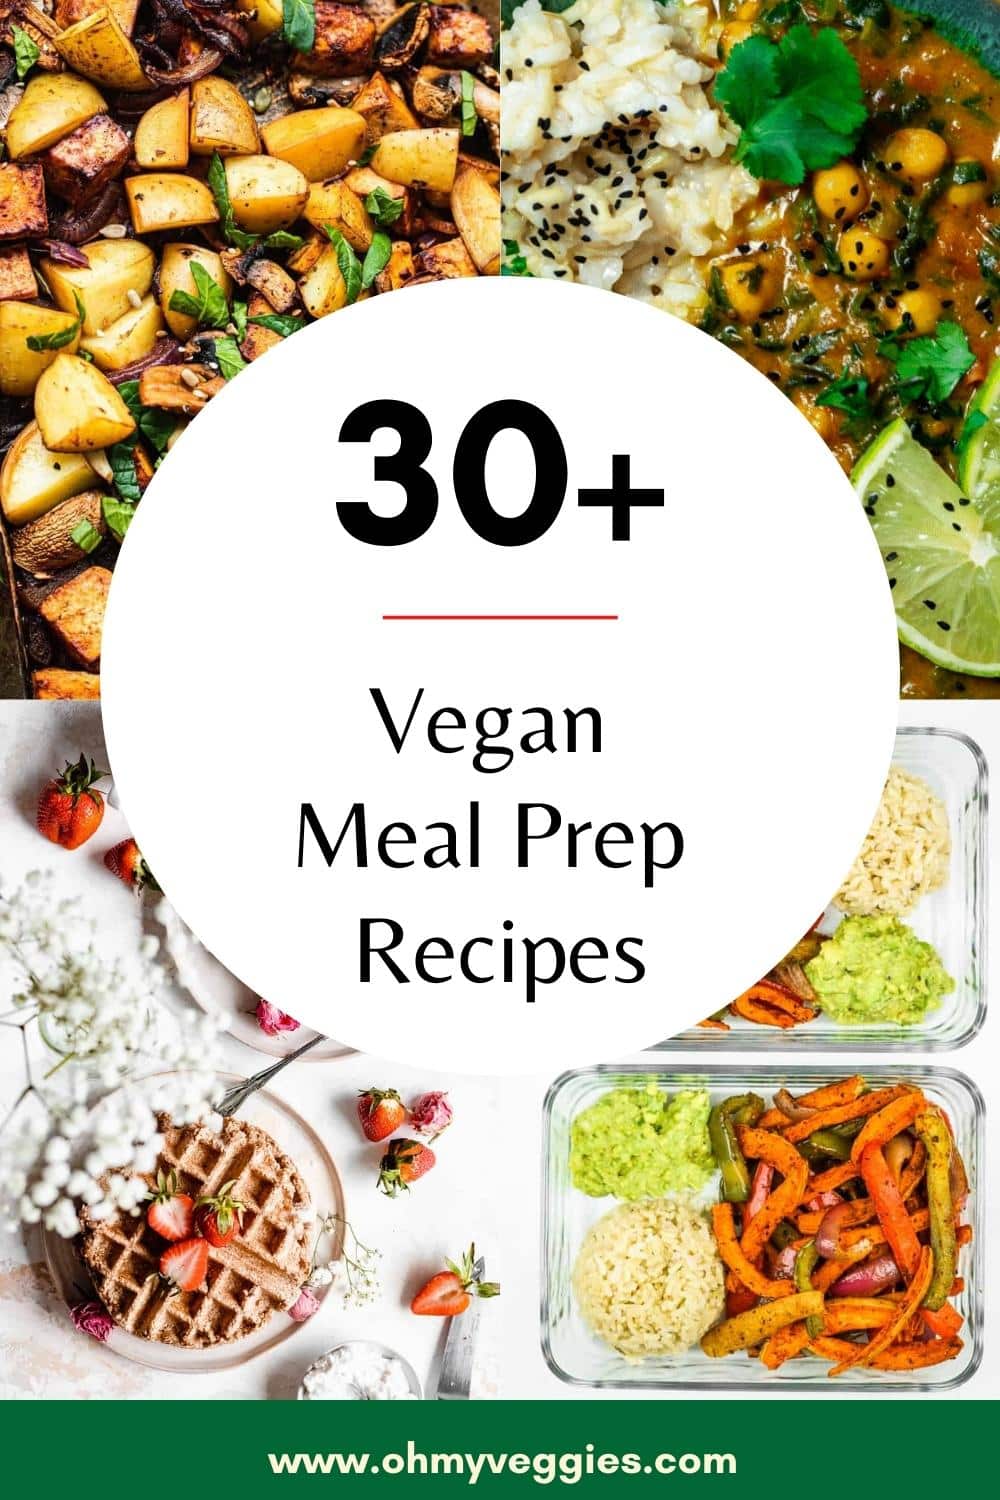 30+ Vegan Meal Prep Recipes - Oh My Veggies